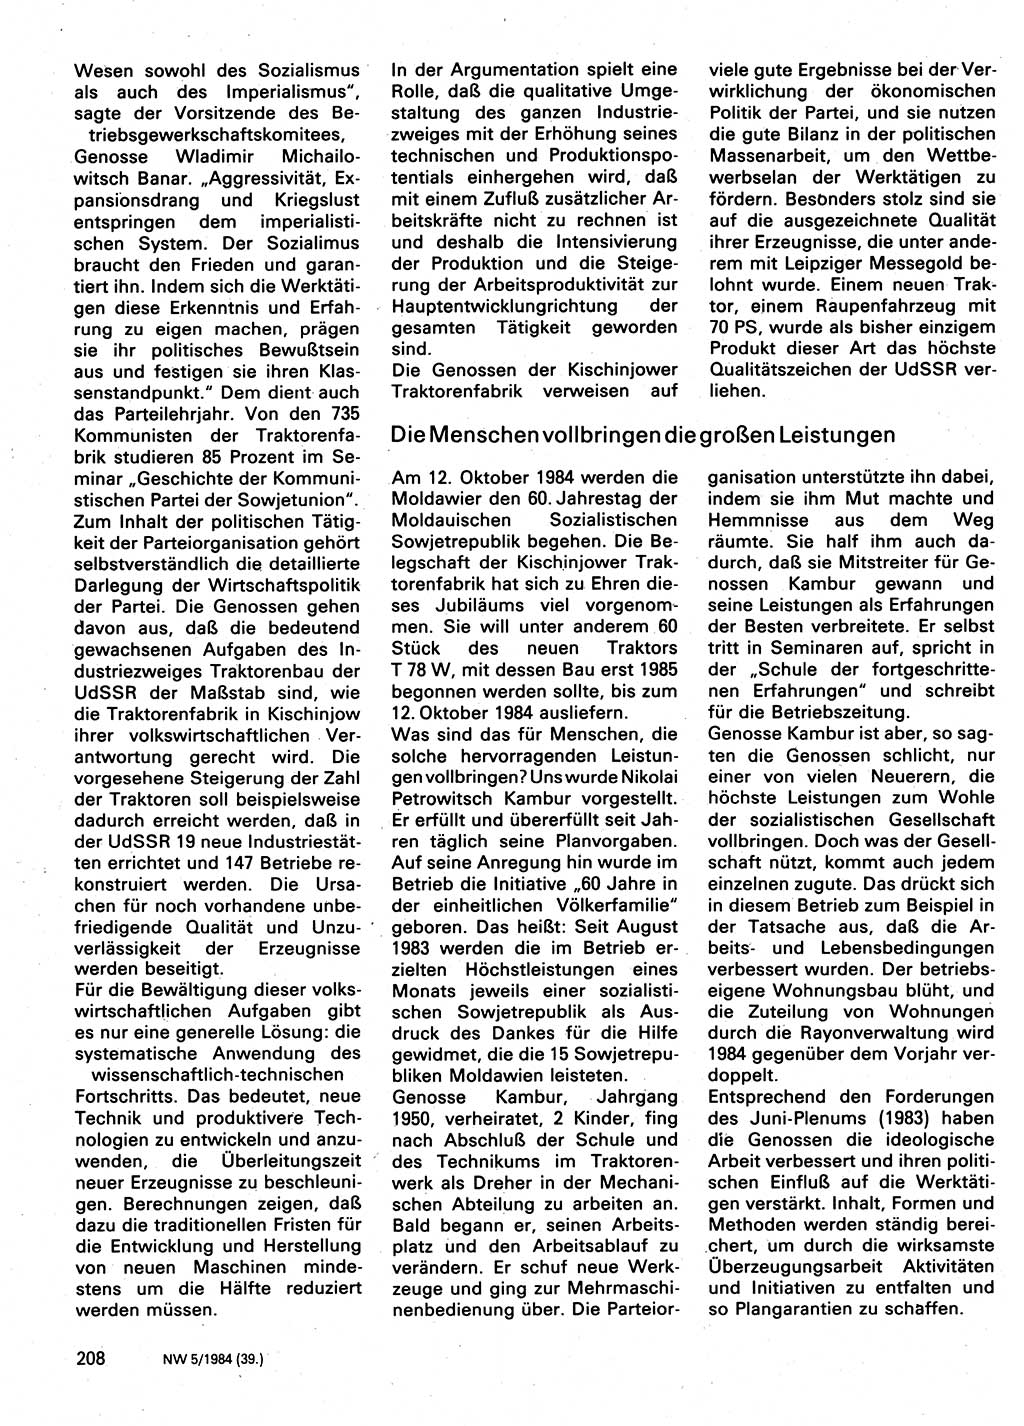 Neuer Weg (NW), Organ des Zentralkomitees (ZK) der SED (Sozialistische Einheitspartei Deutschlands) für Fragen des Parteilebens, 39. Jahrgang [Deutsche Demokratische Republik (DDR)] 1984, Seite 208 (NW ZK SED DDR 1984, S. 208)